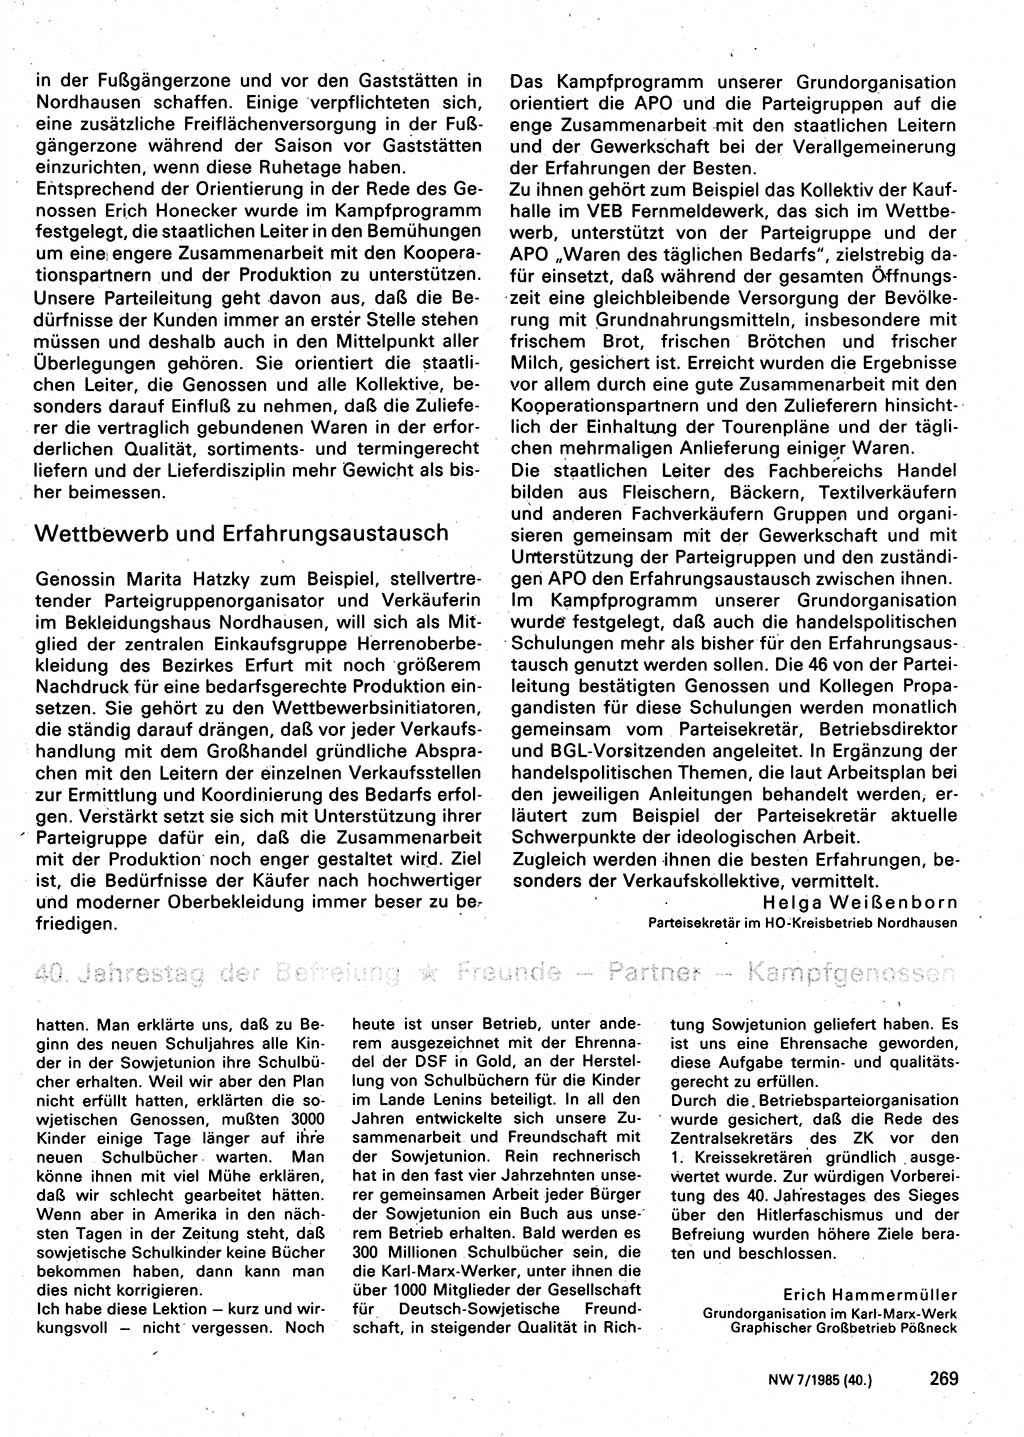 Neuer Weg (NW), Organ des Zentralkomitees (ZK) der SED (Sozialistische Einheitspartei Deutschlands) für Fragen des Parteilebens, 40. Jahrgang [Deutsche Demokratische Republik (DDR)] 1985, Seite 269 (NW ZK SED DDR 1985, S. 269)